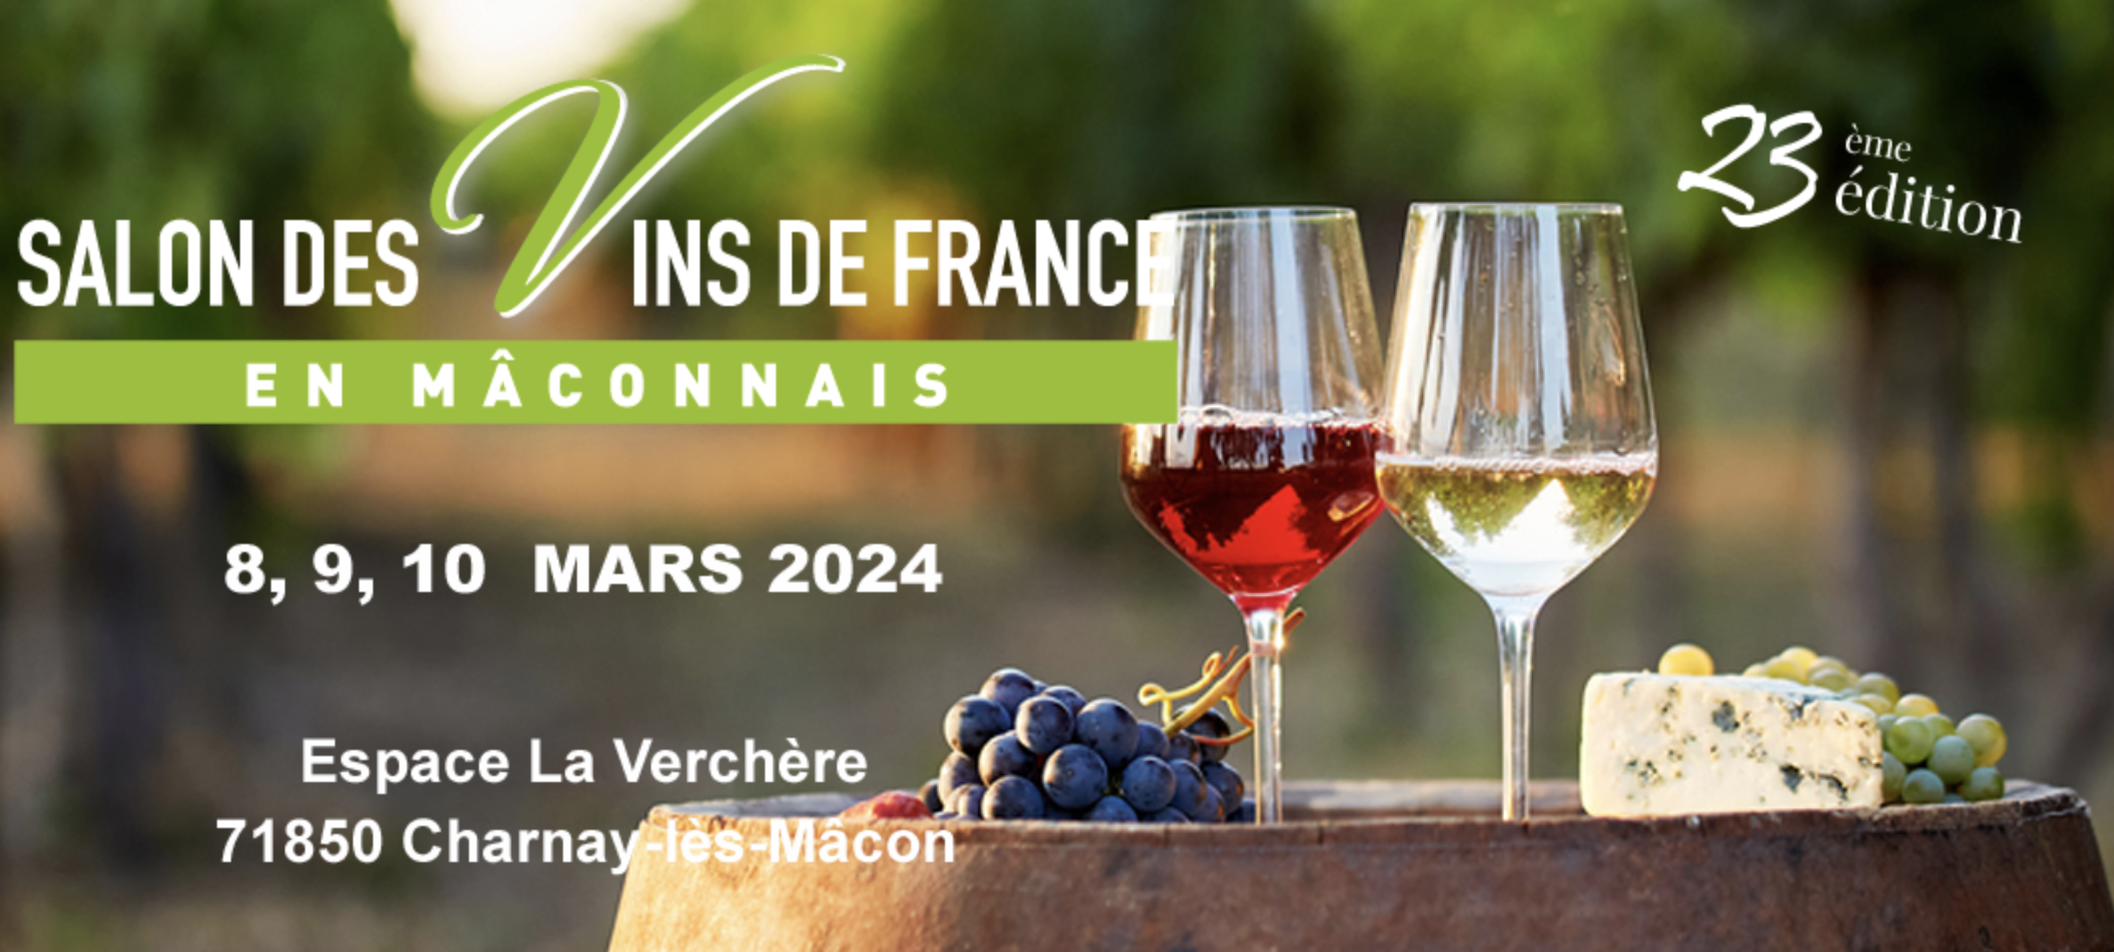 Salon des vins de France 2024 à Charnay-Lès-Mâcon